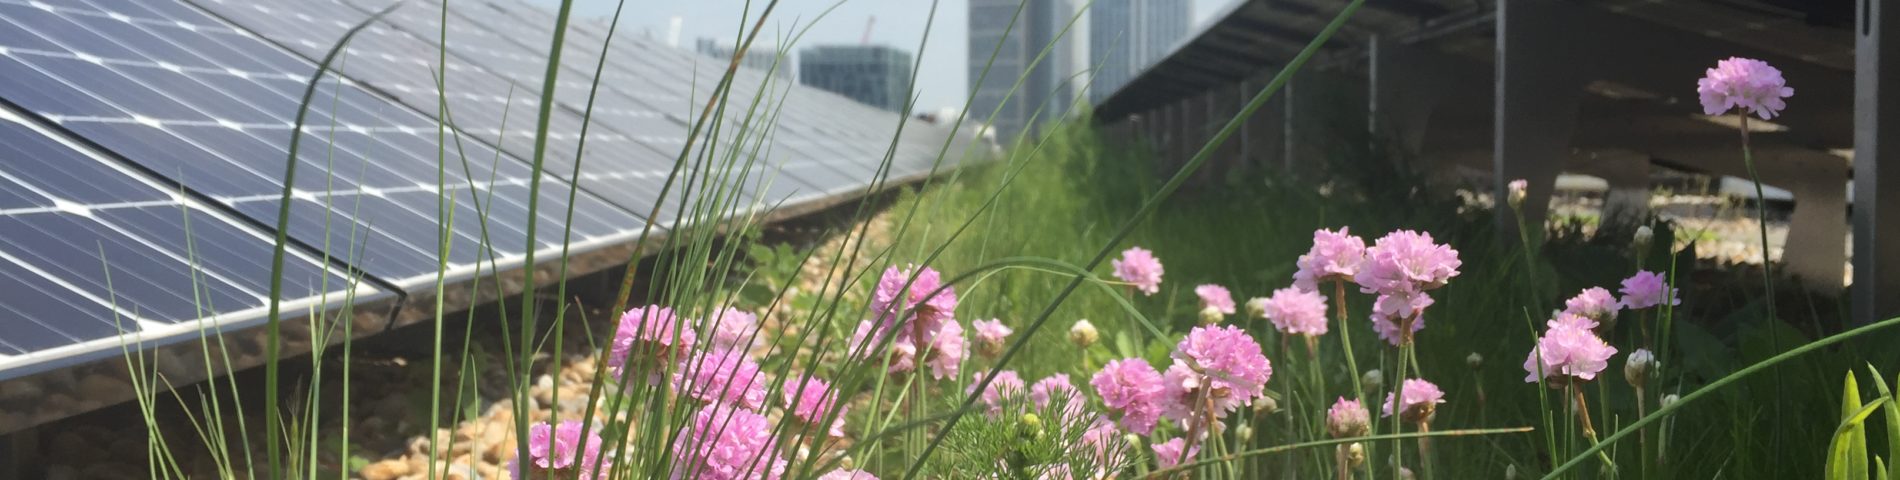 Dachbegrünung mit Photovoltaikanlage, Blumen im Vordergrund, Hochhäuser im Hintergrund